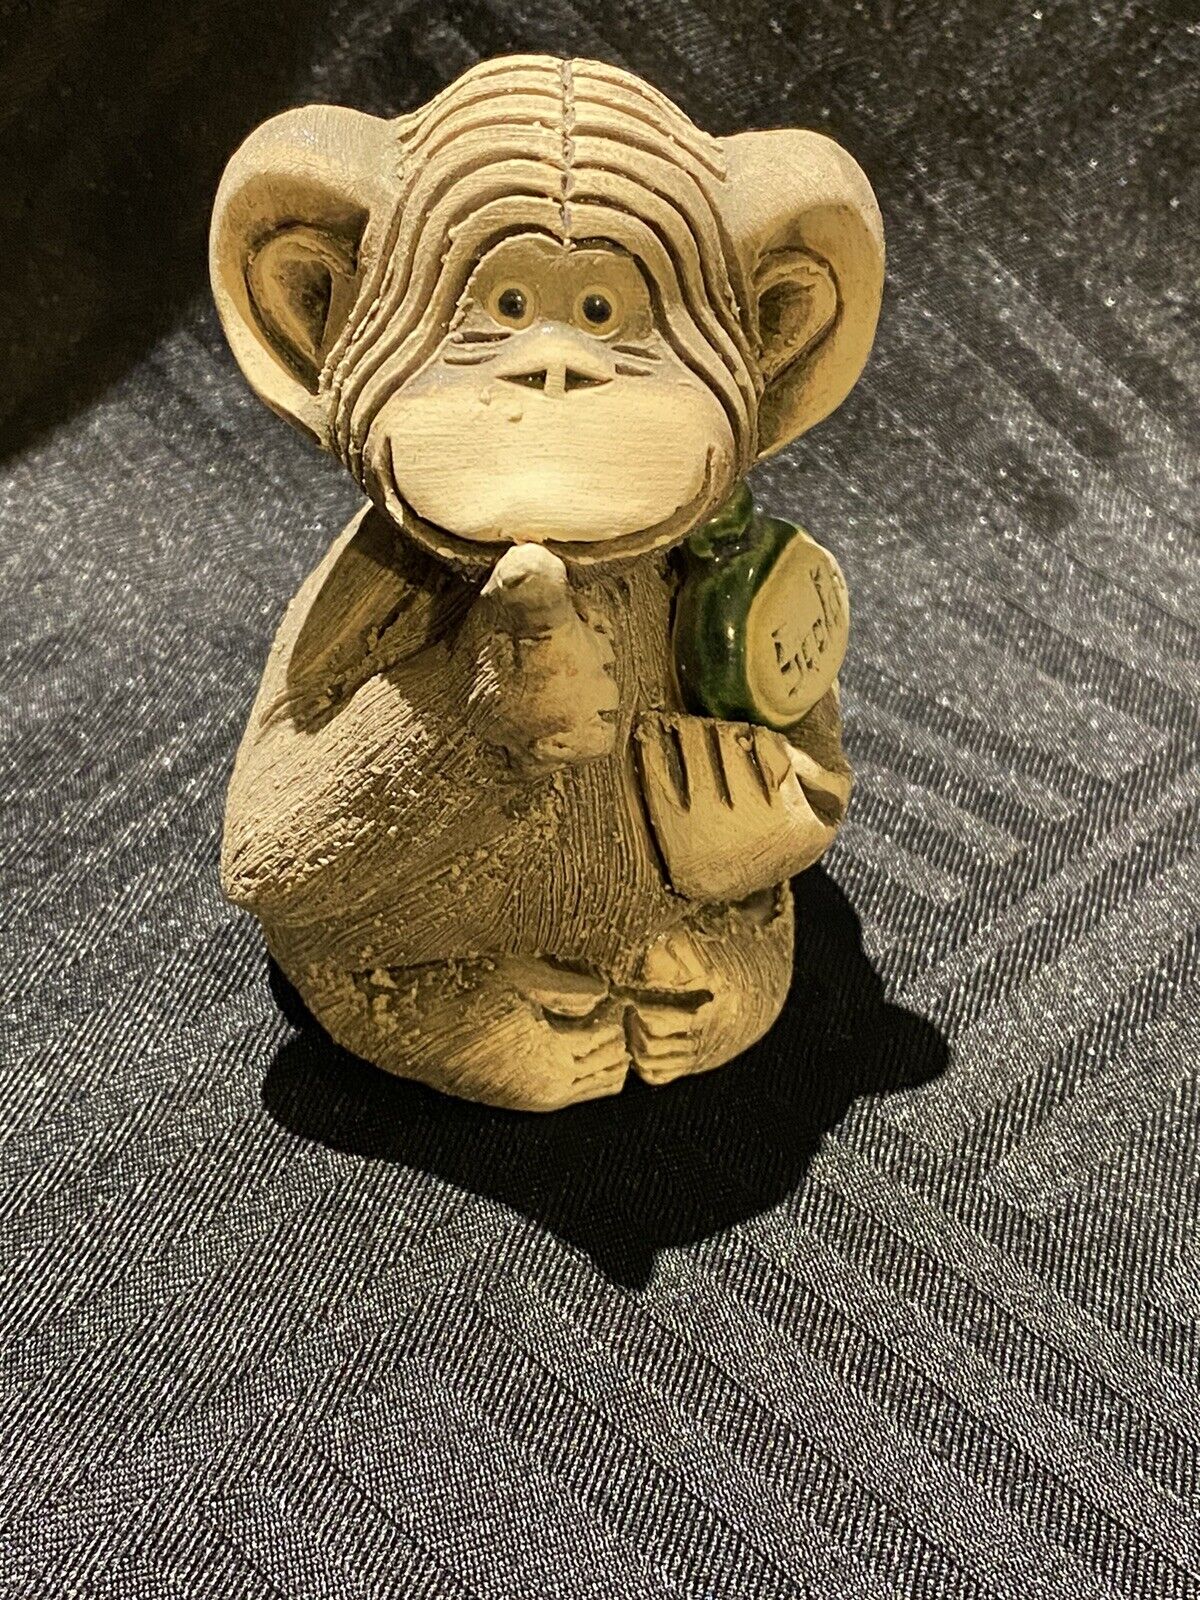 Vintage Artesania Rinconada Monkey holding bottle of scotch signed clay figurine